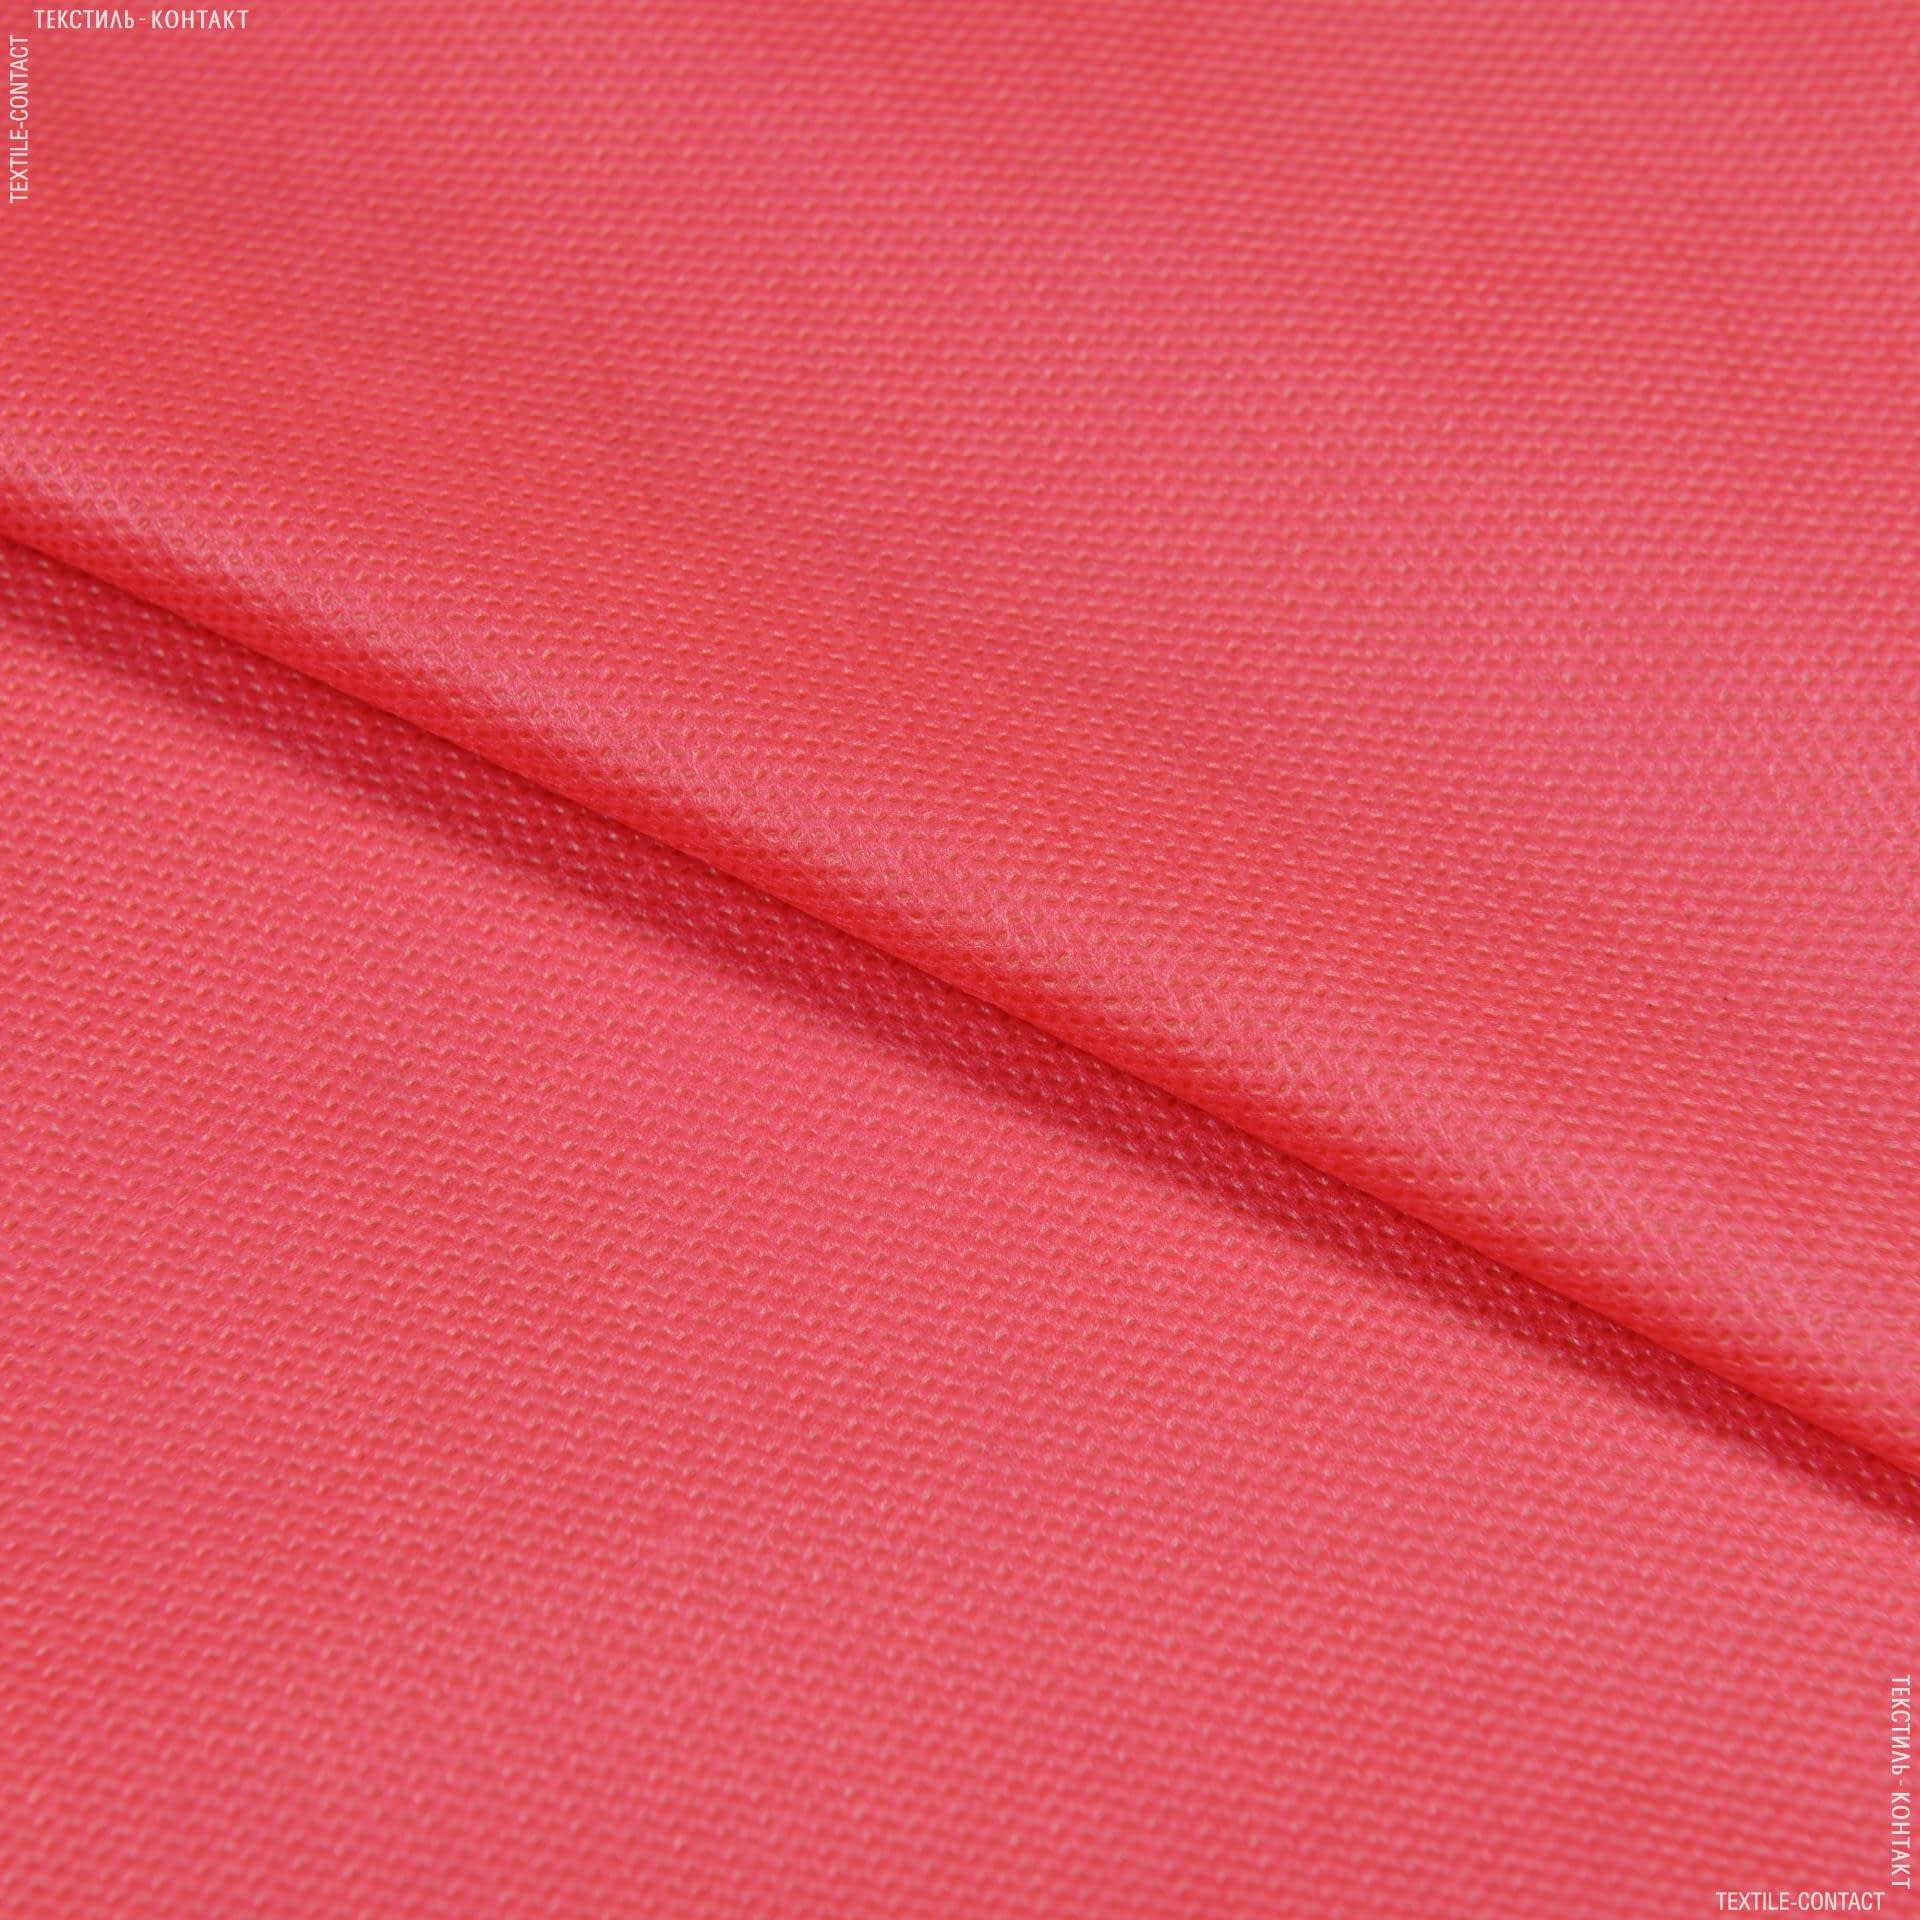 Ткани для сумок - Спанбонд 70g красный